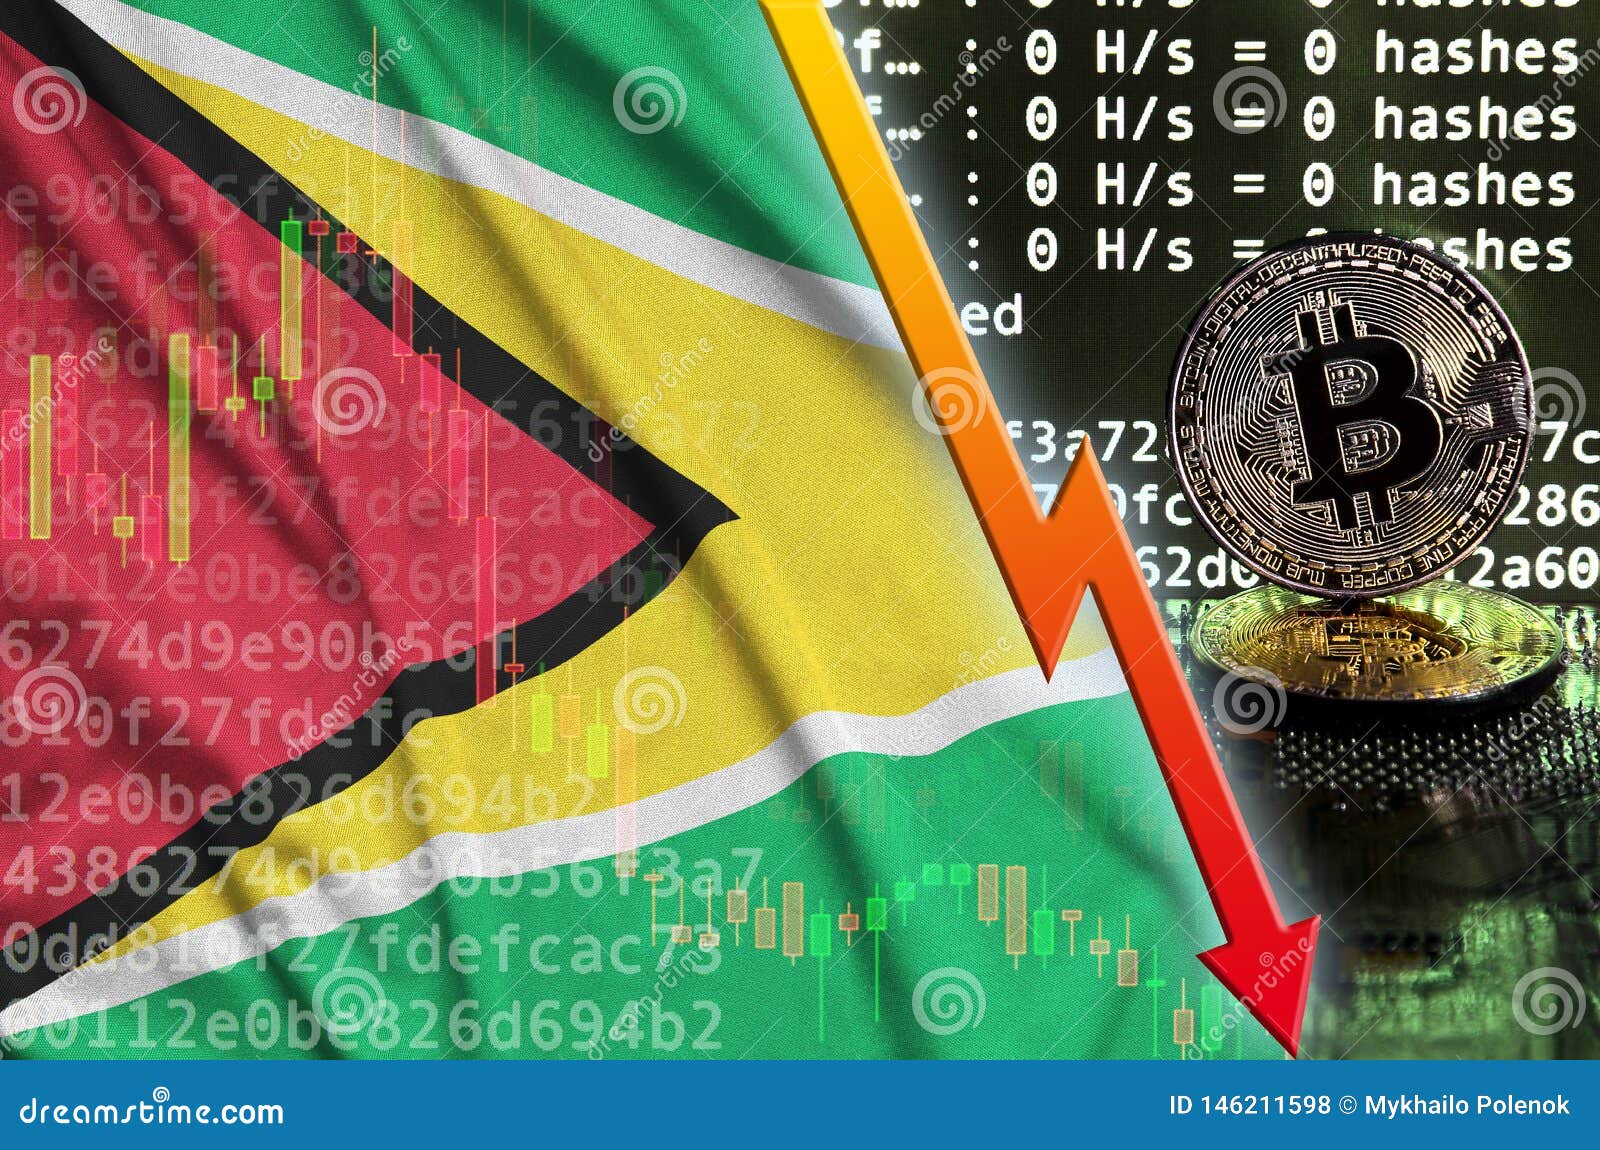 buy bitcoin in guyana